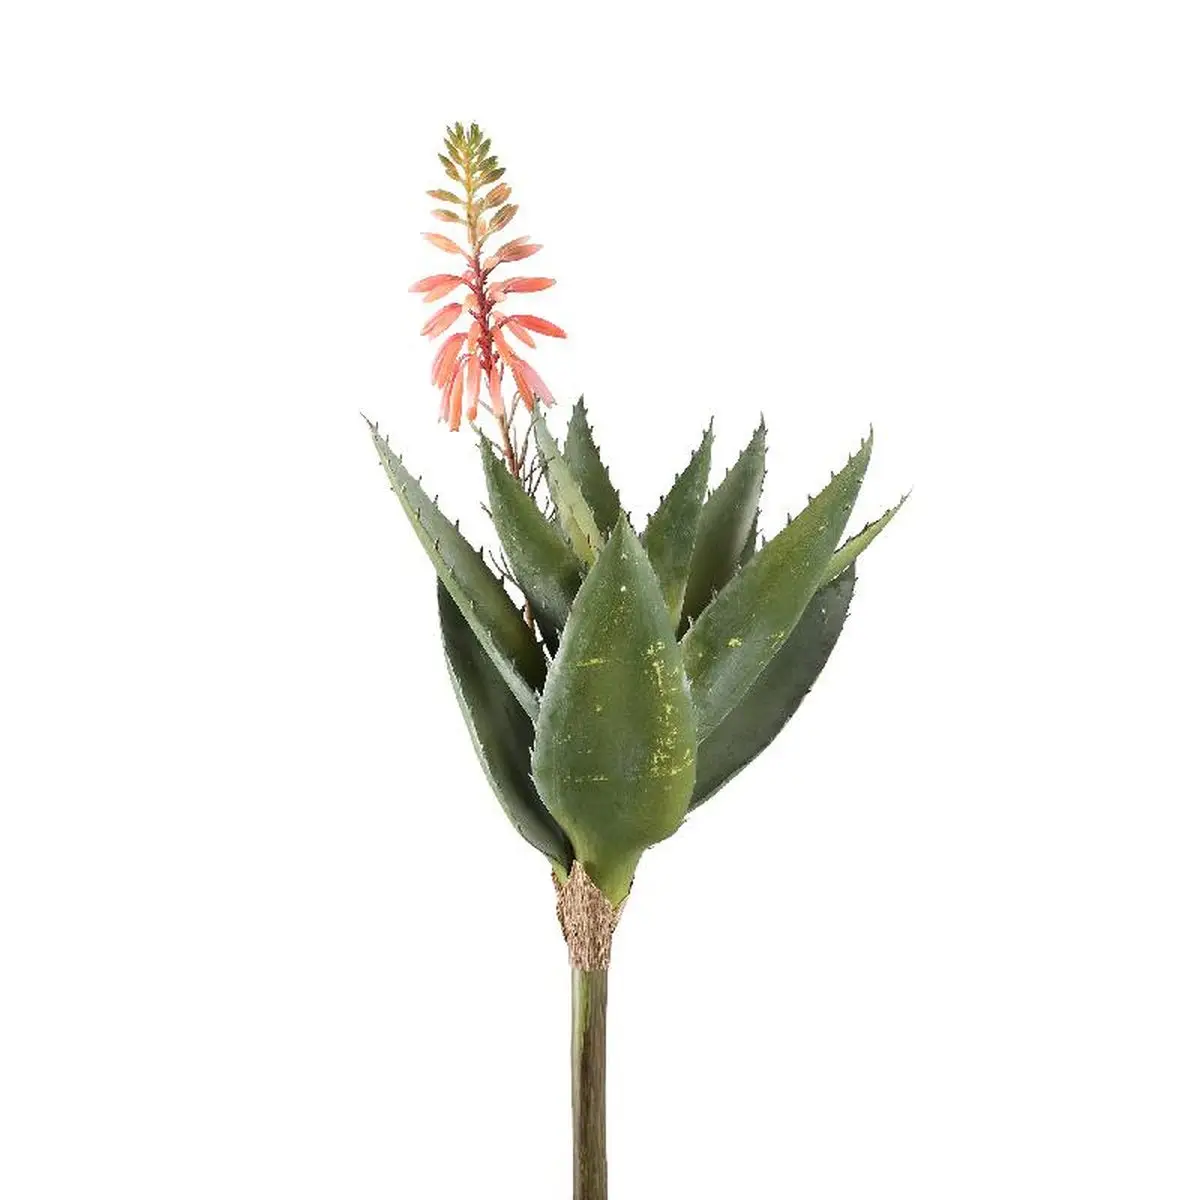 K眉nstliche Succulent Pflanze